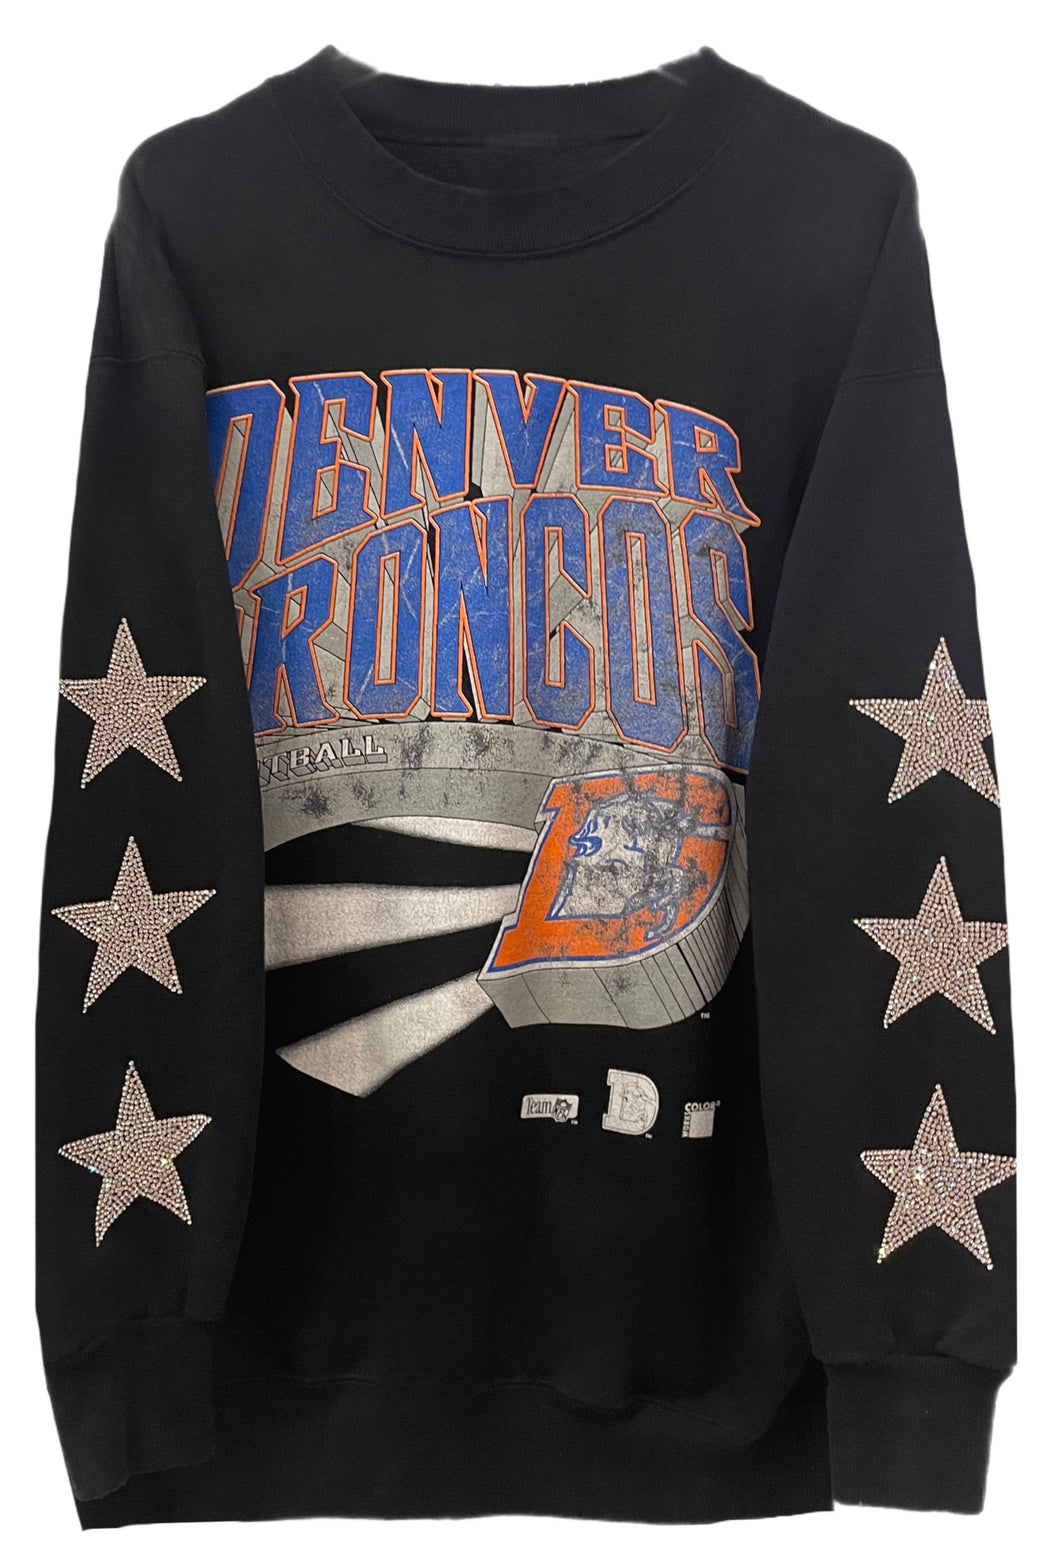 Denver Broncos, NFL One of a KIND Vintage “Rare Find” Sweatshirt with Three Crystal Star Design